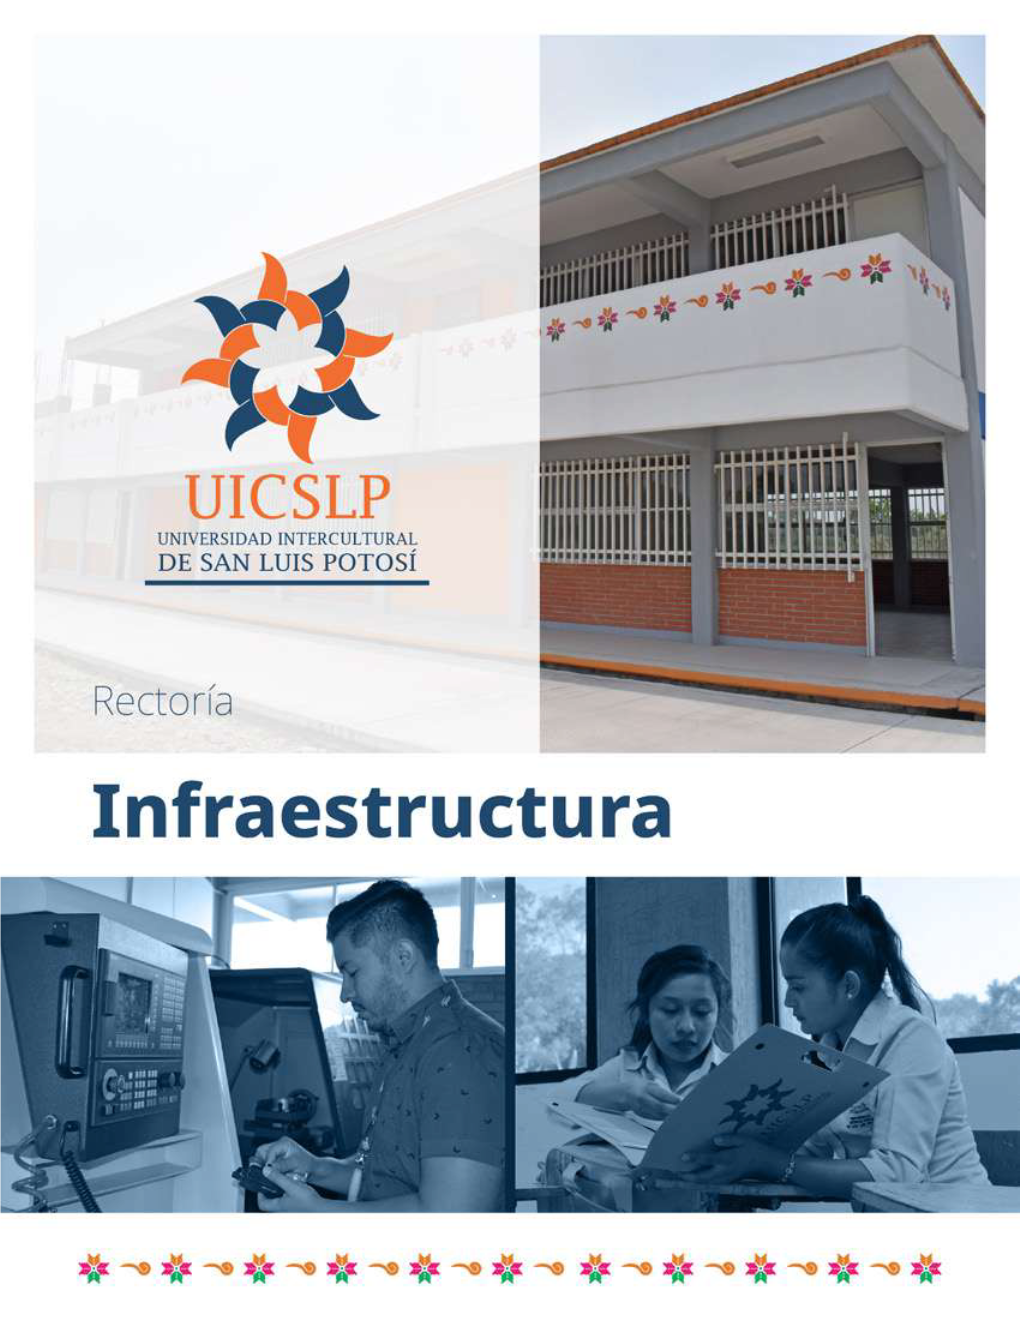 1. Infraestructura